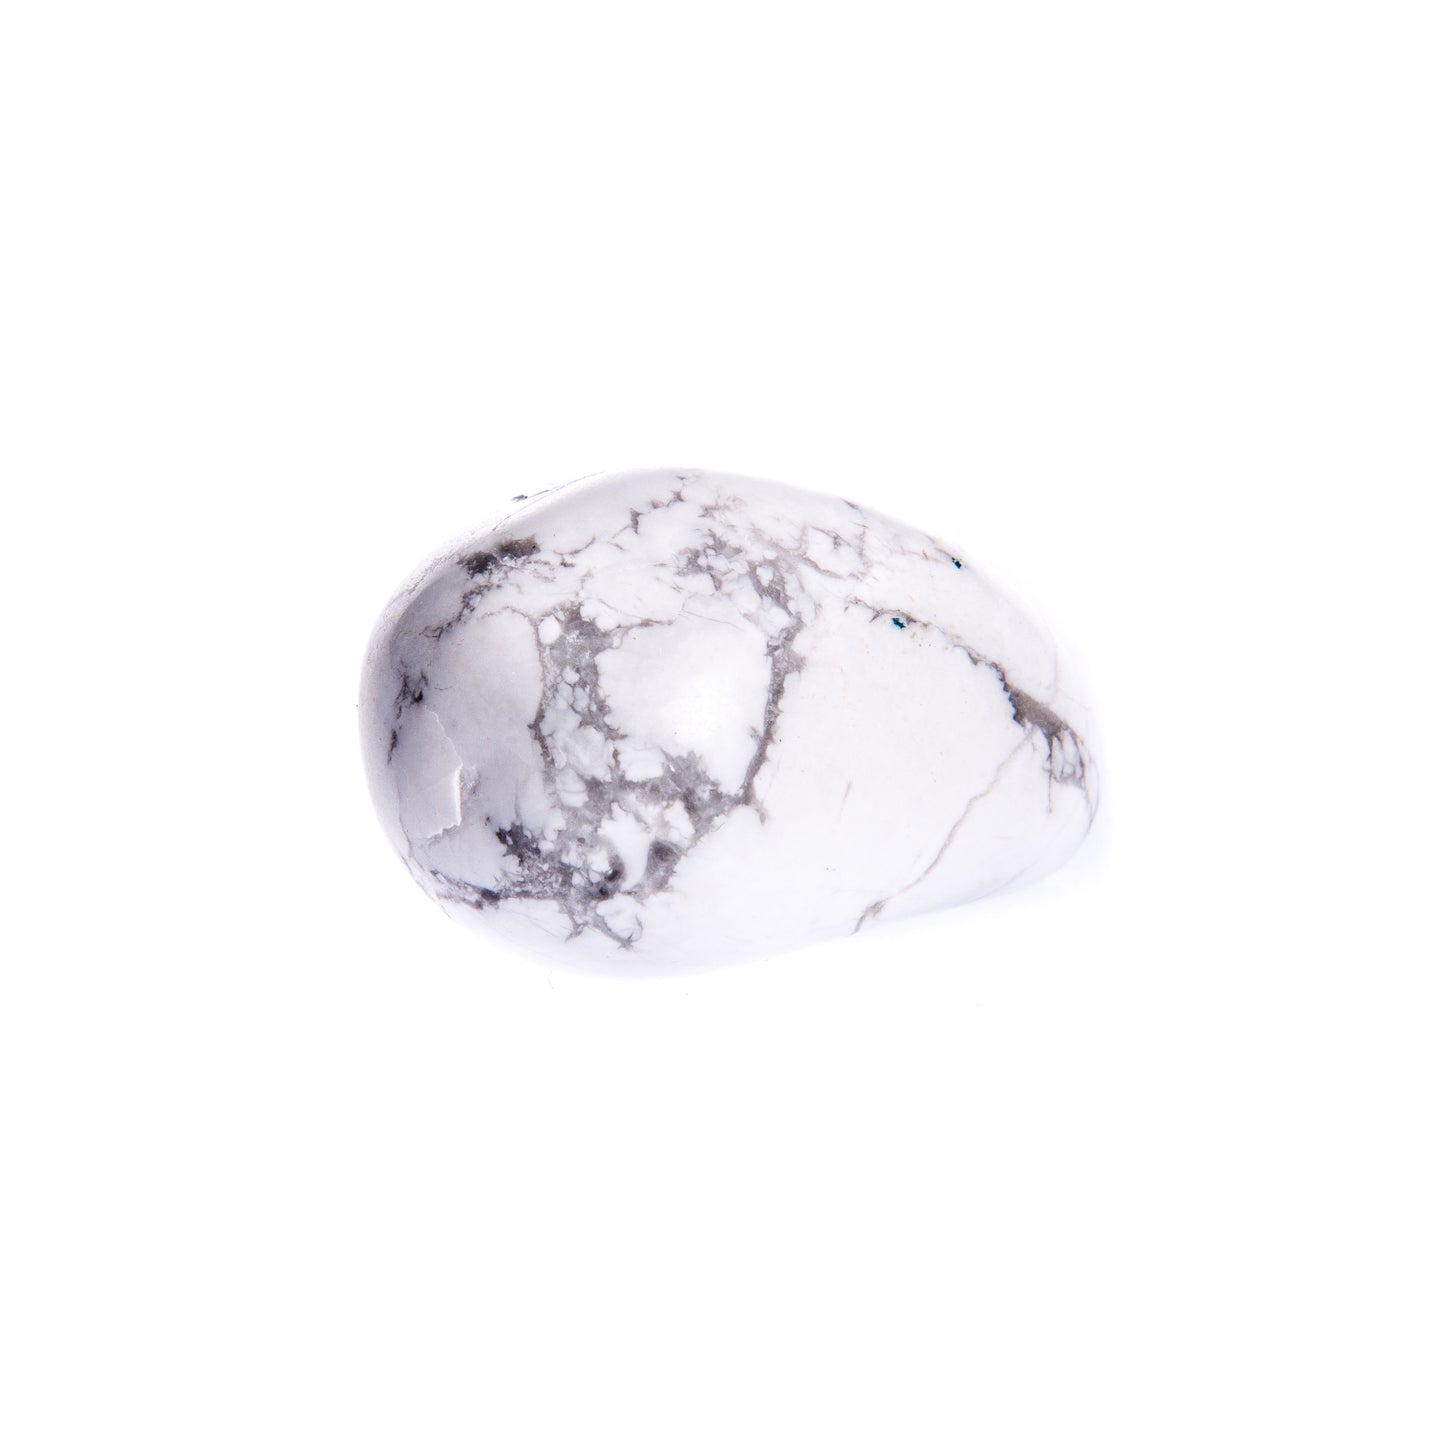 Burattato Howlite - Le Origini pietre dure pietre semipreziose, pietre naturali